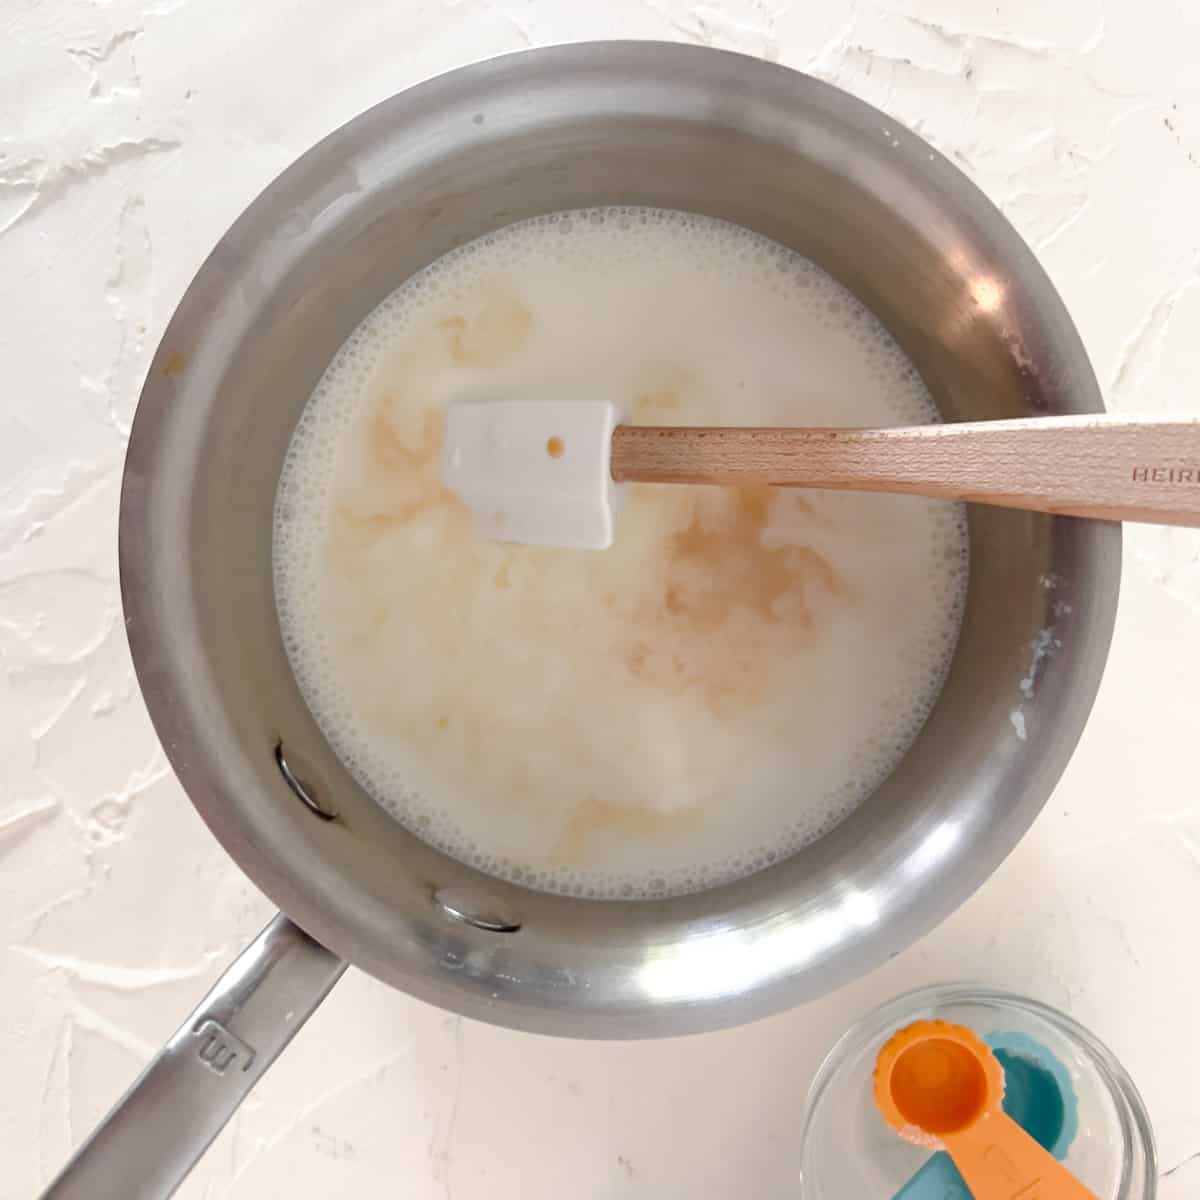 Milk, cream, sugar, and vanilla warming in small saucepan.